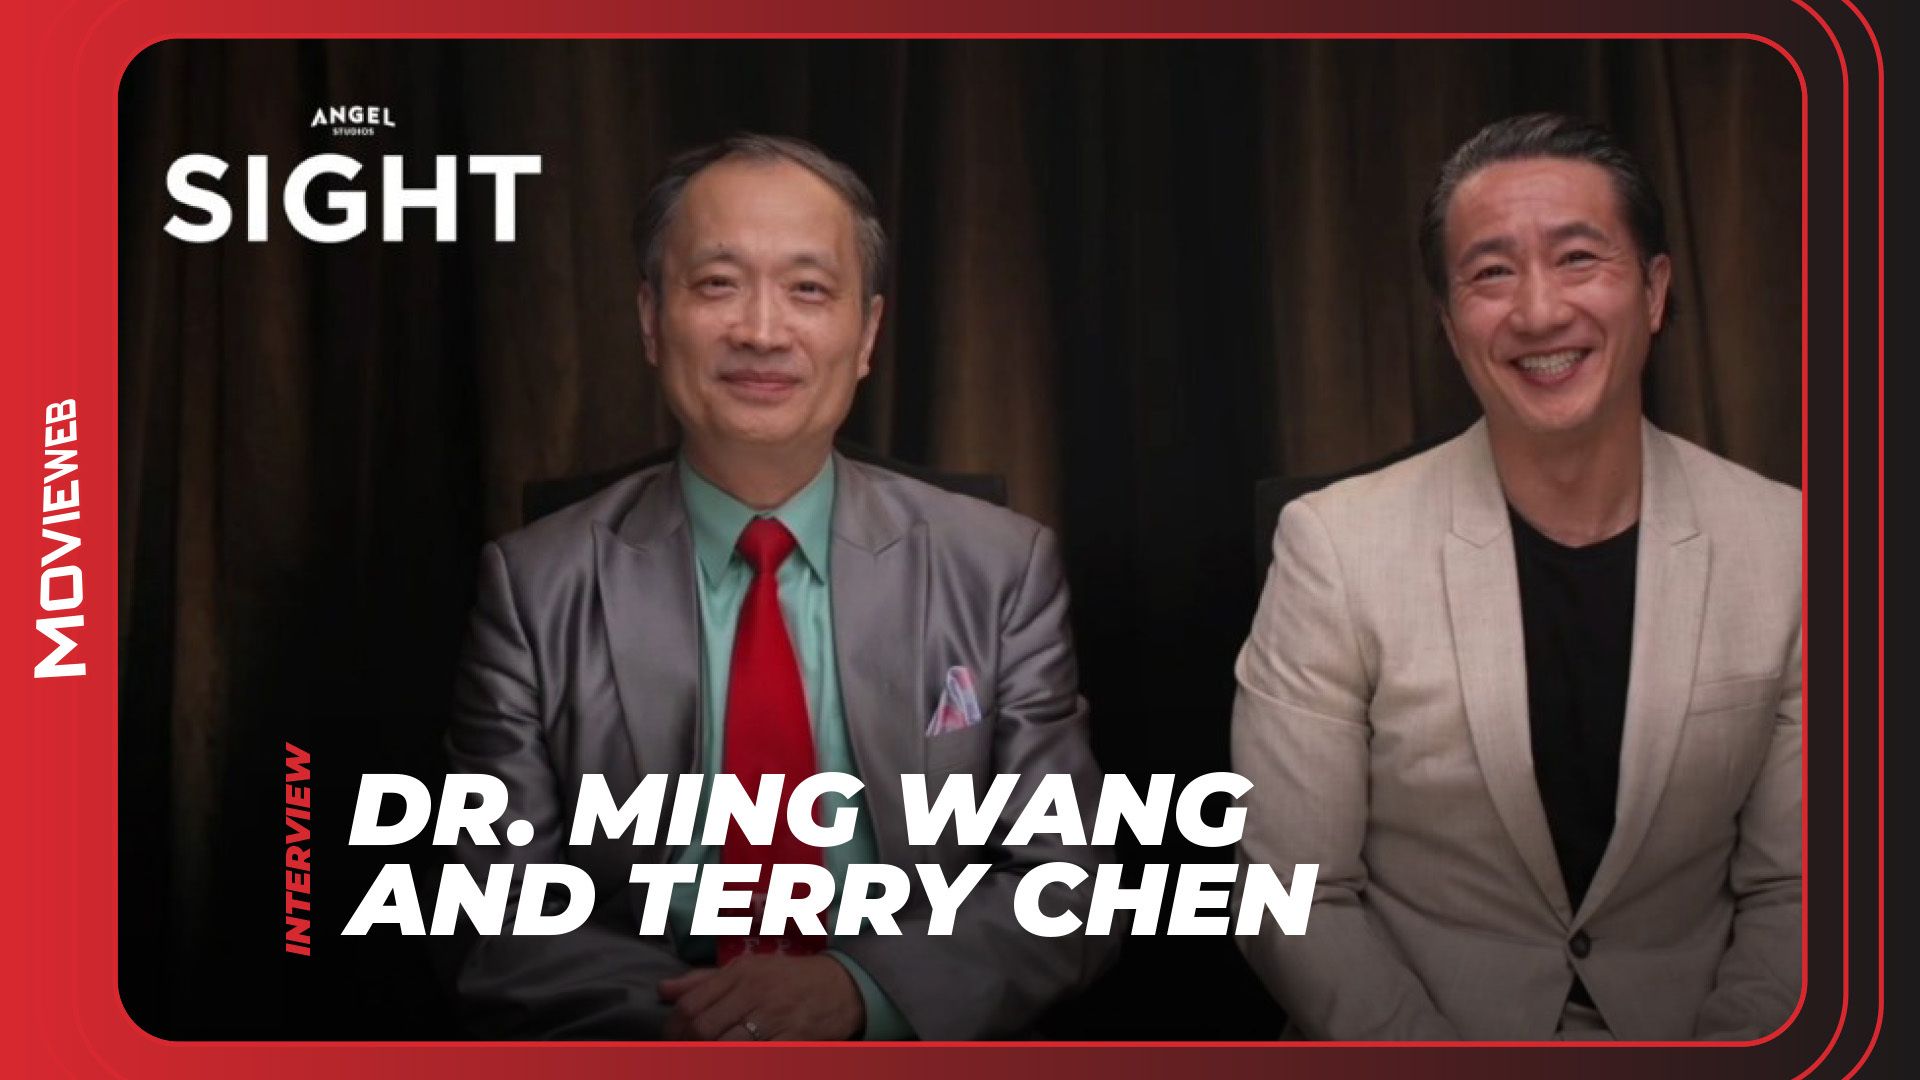 Terry Chen et le vrai Dr Ming Wang sur la vue et donner une vision au